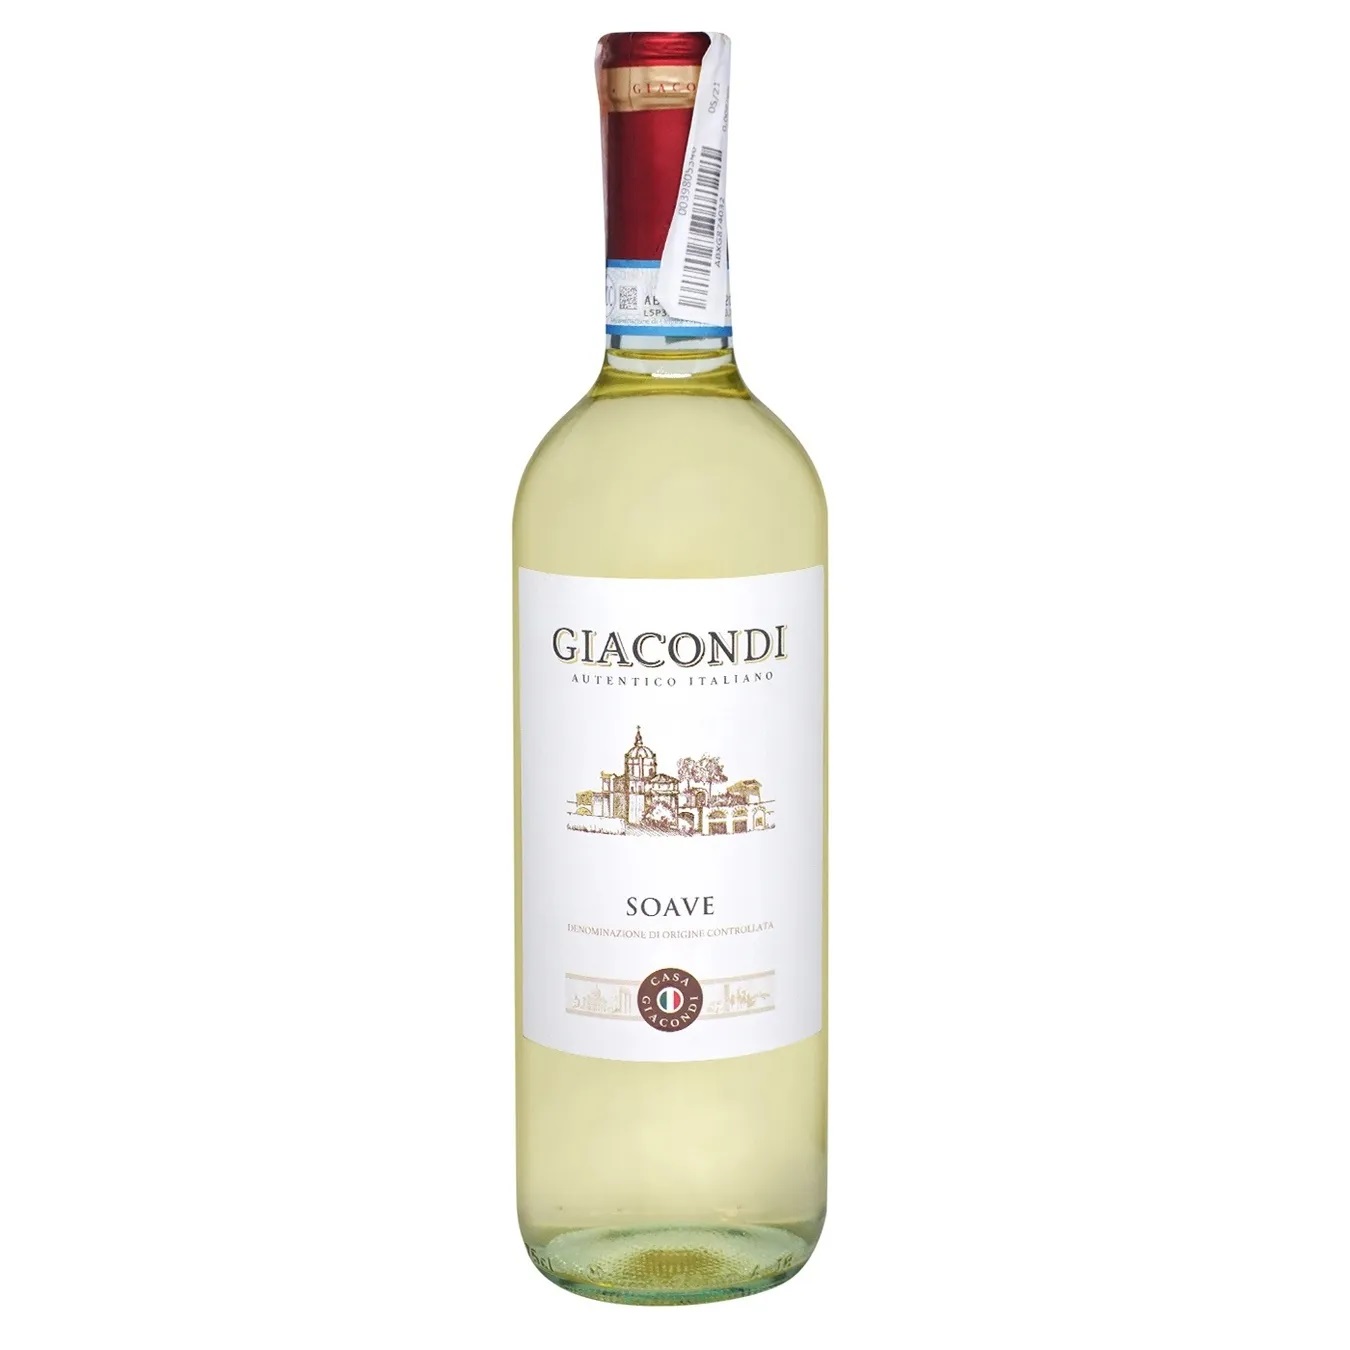 Вино Giacondi Soave біле сухе 11,5% 0,75л